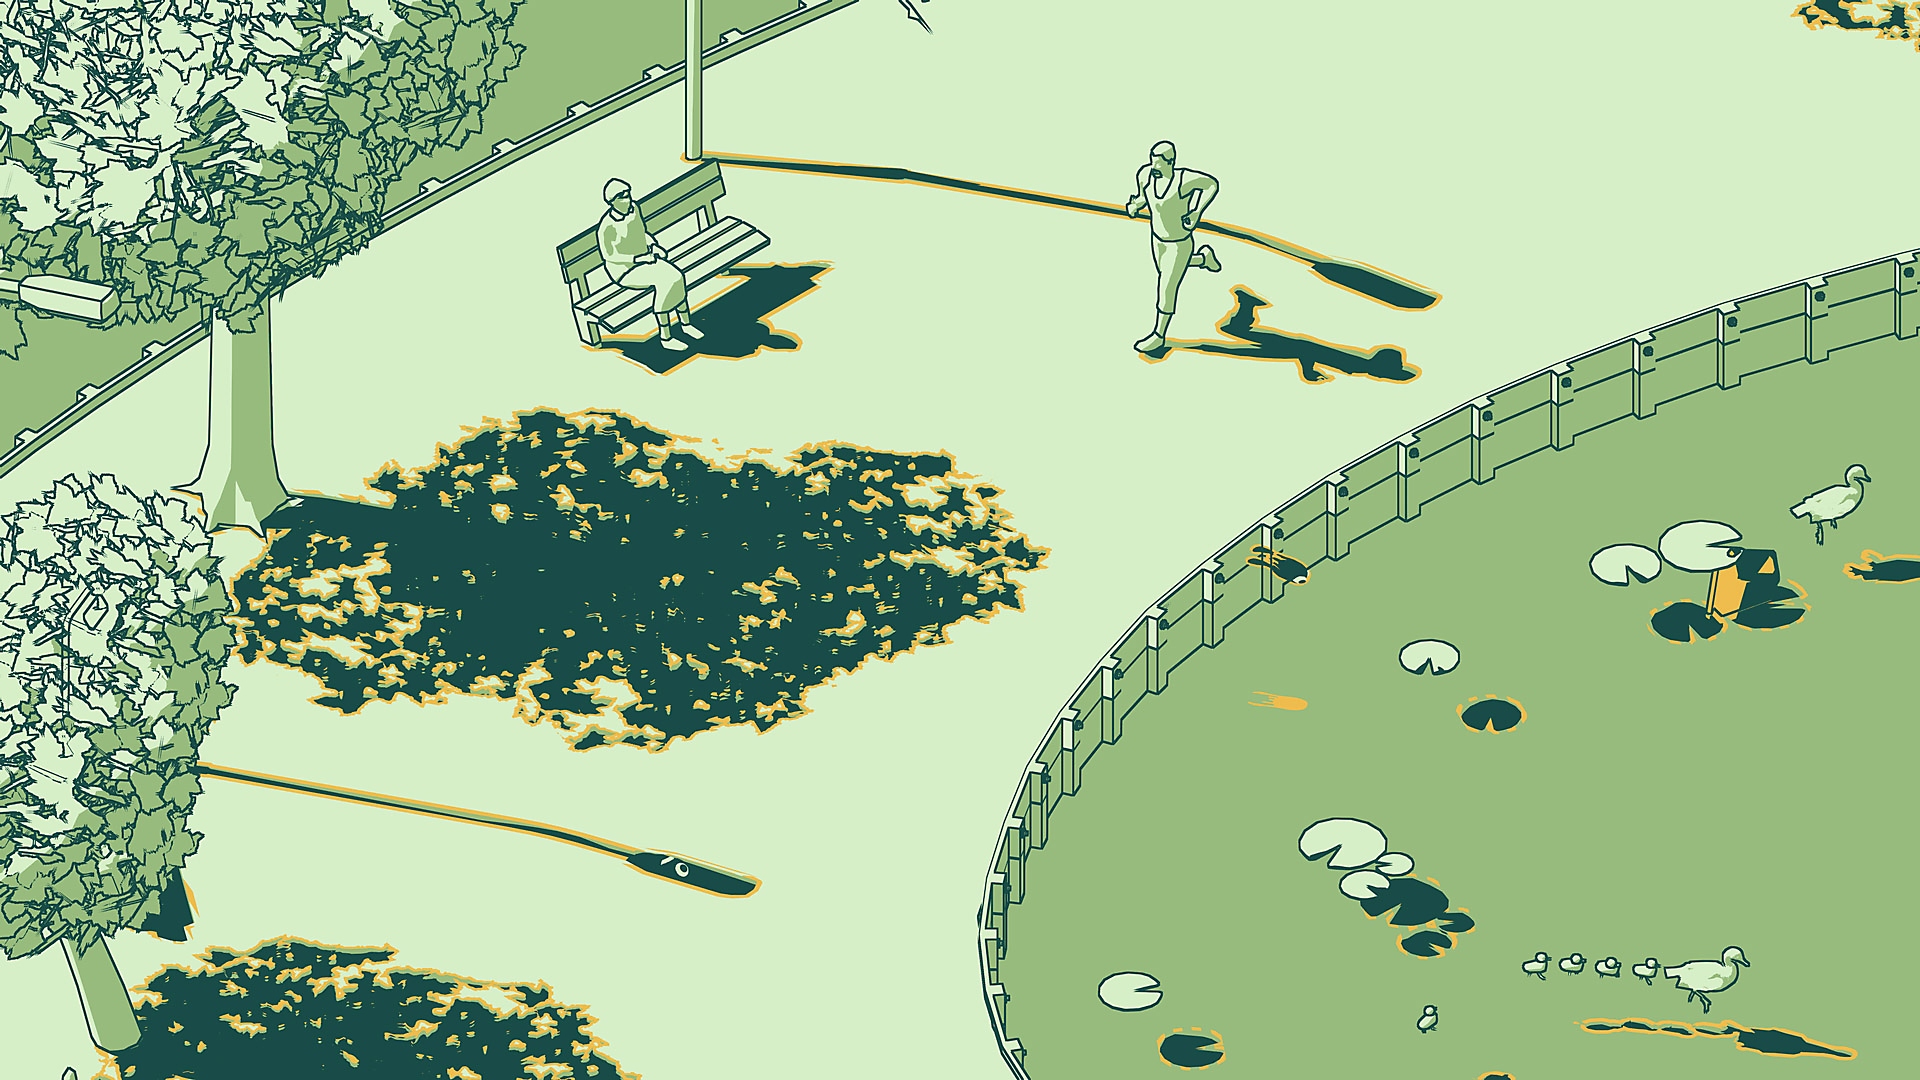 SCHiM - Istantanea della schermata che mostra un parco con una persona che corre e un'altra seduta su una panchina